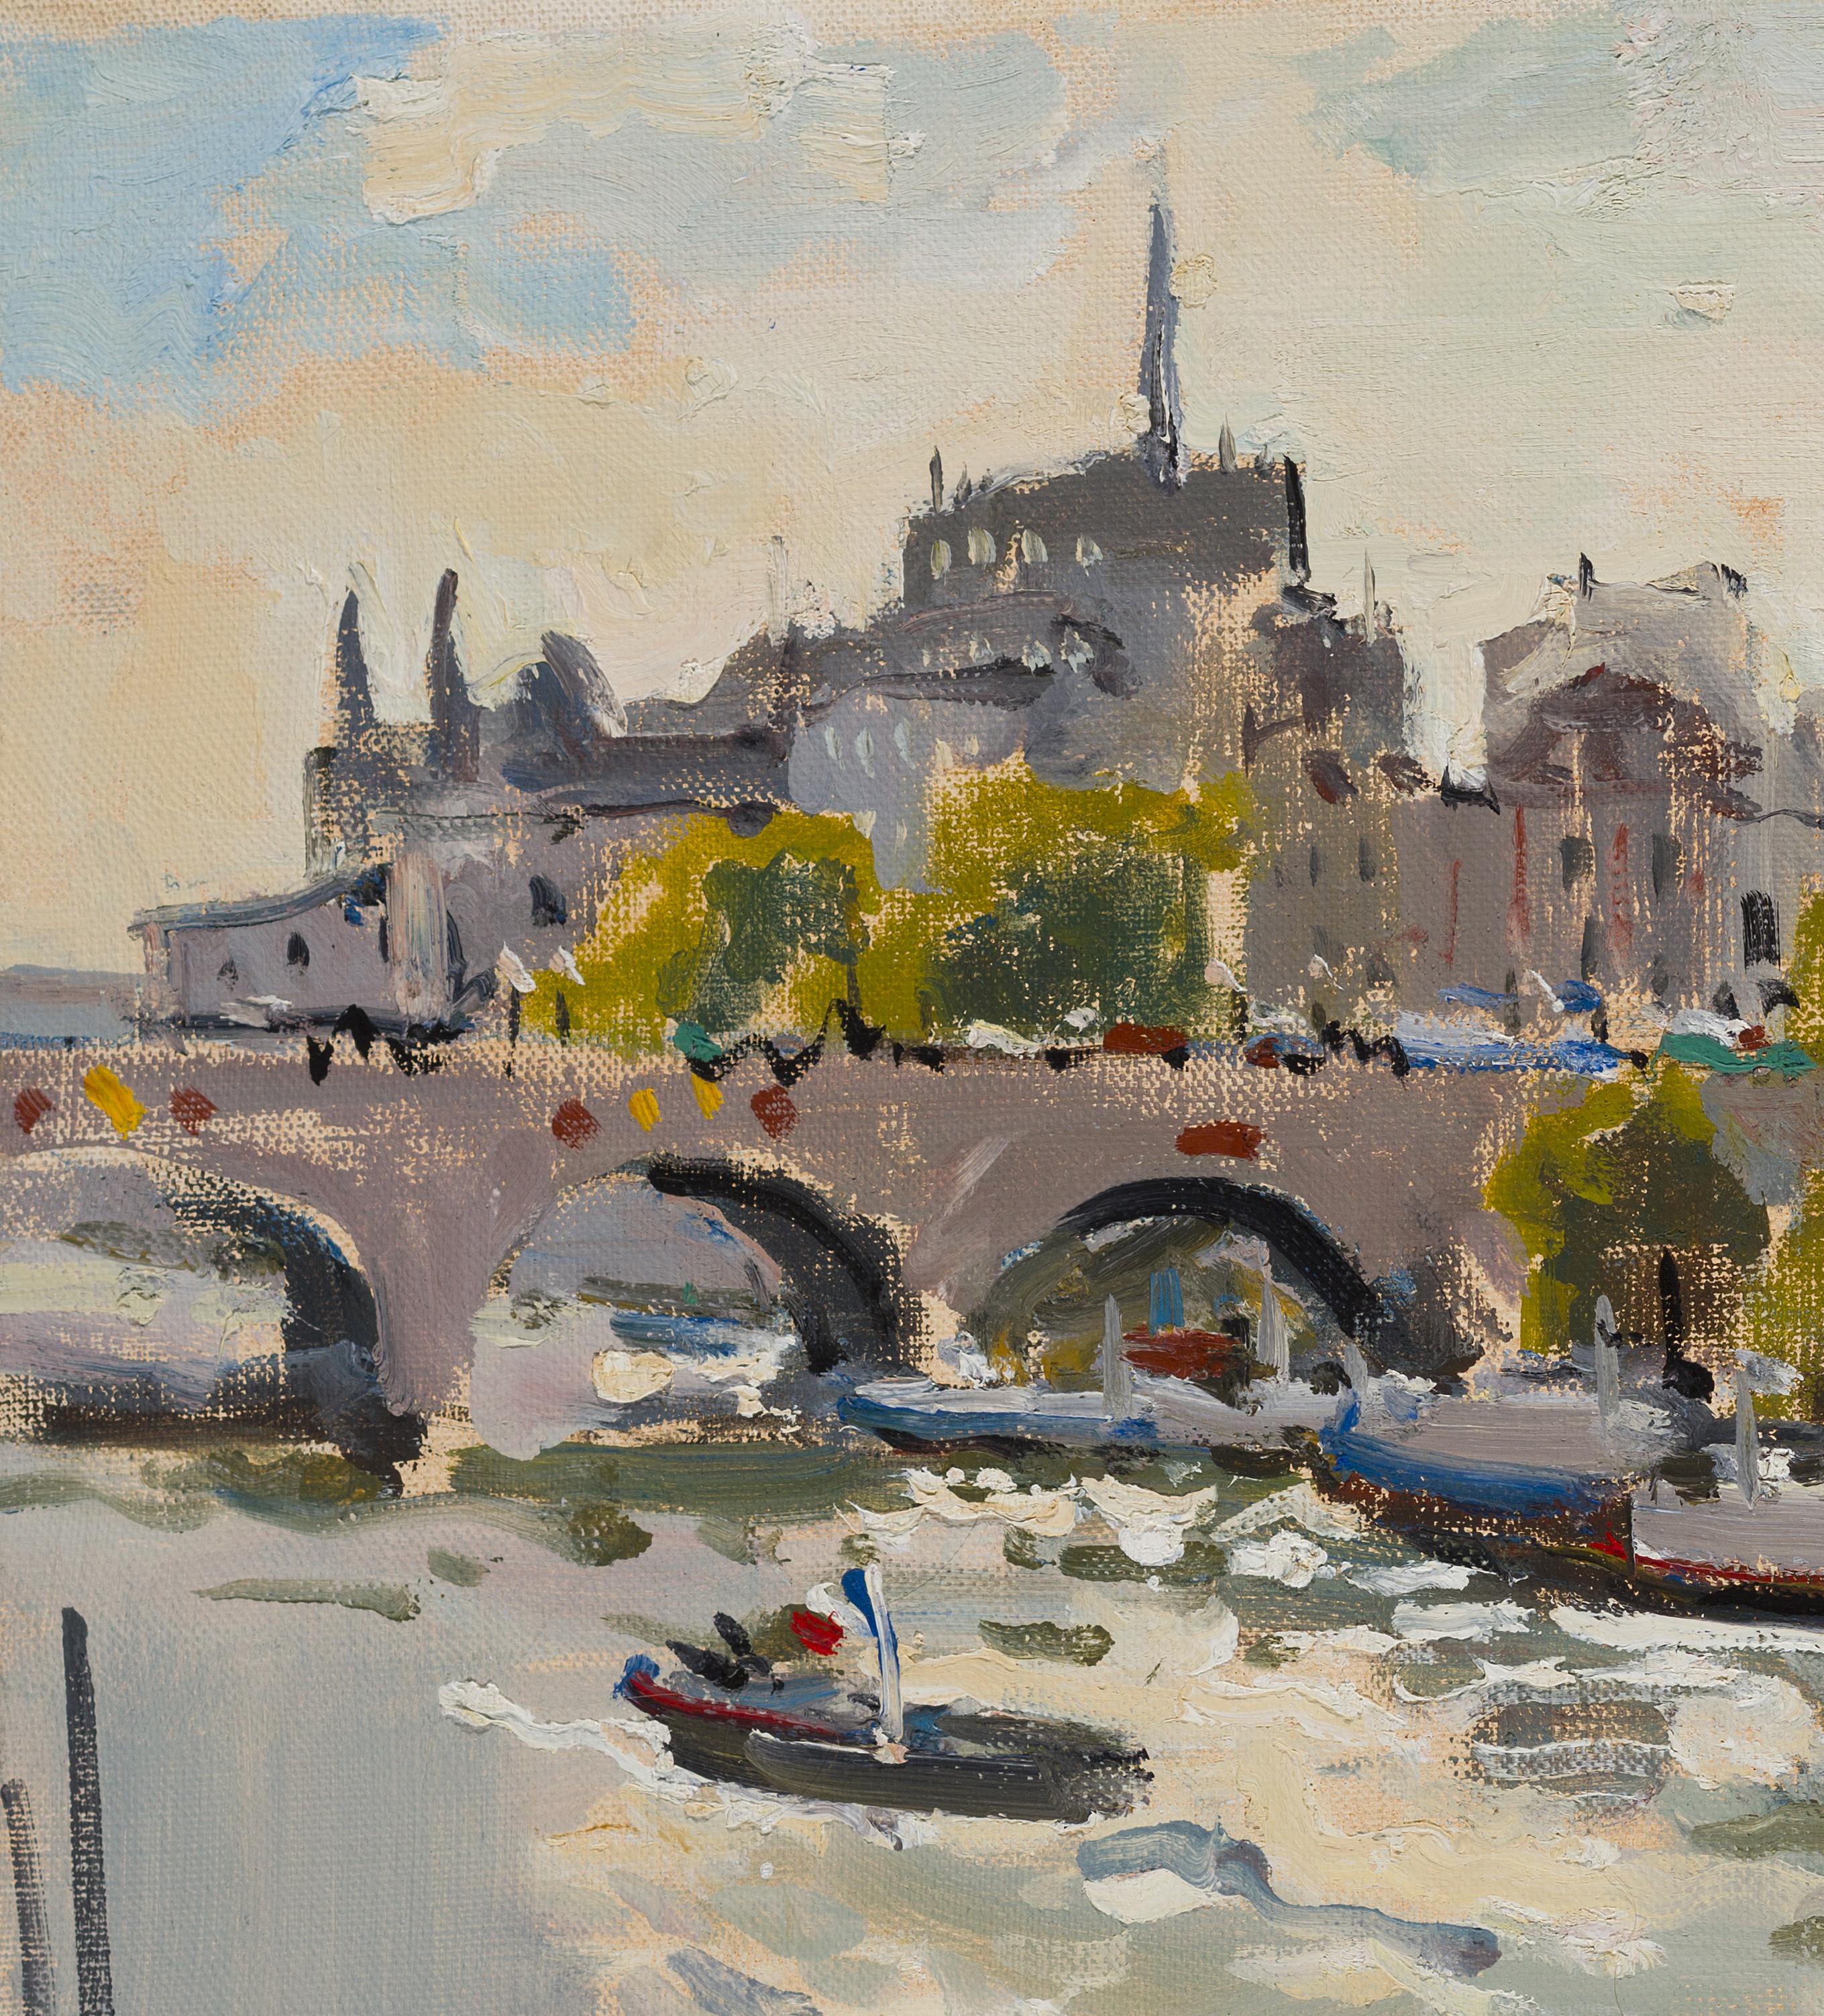 Seine. Paris - 21st Century Contemporary Impressionism Landscape Oil Painting For Sale 4